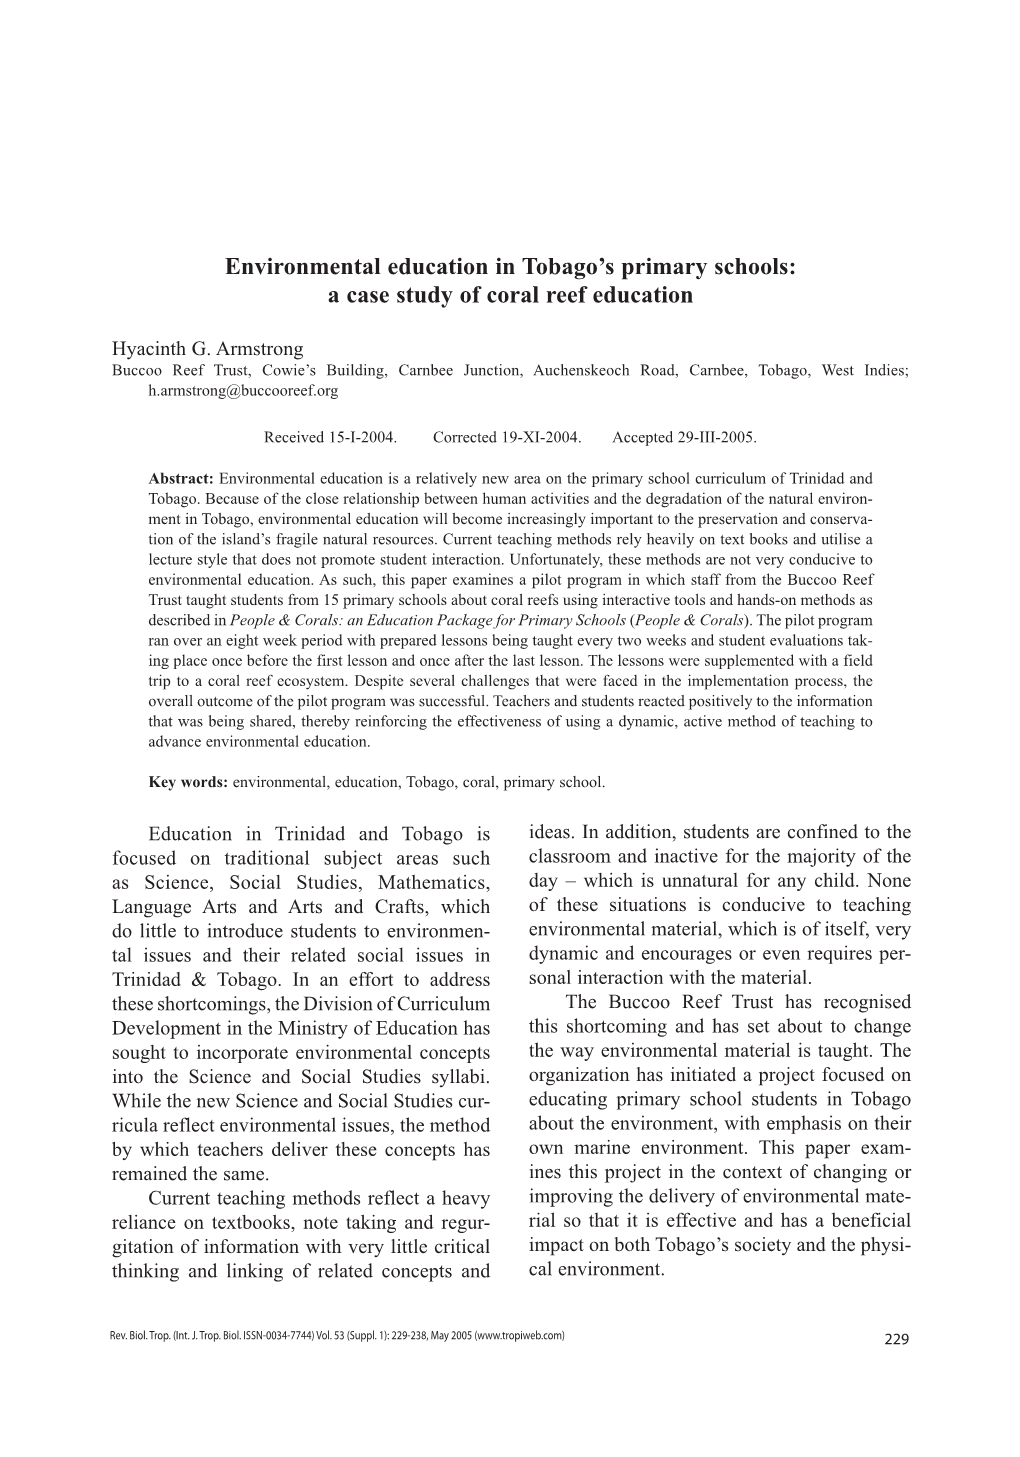 Environmental Education in Tobago's Primary Schools: a Case Study Of